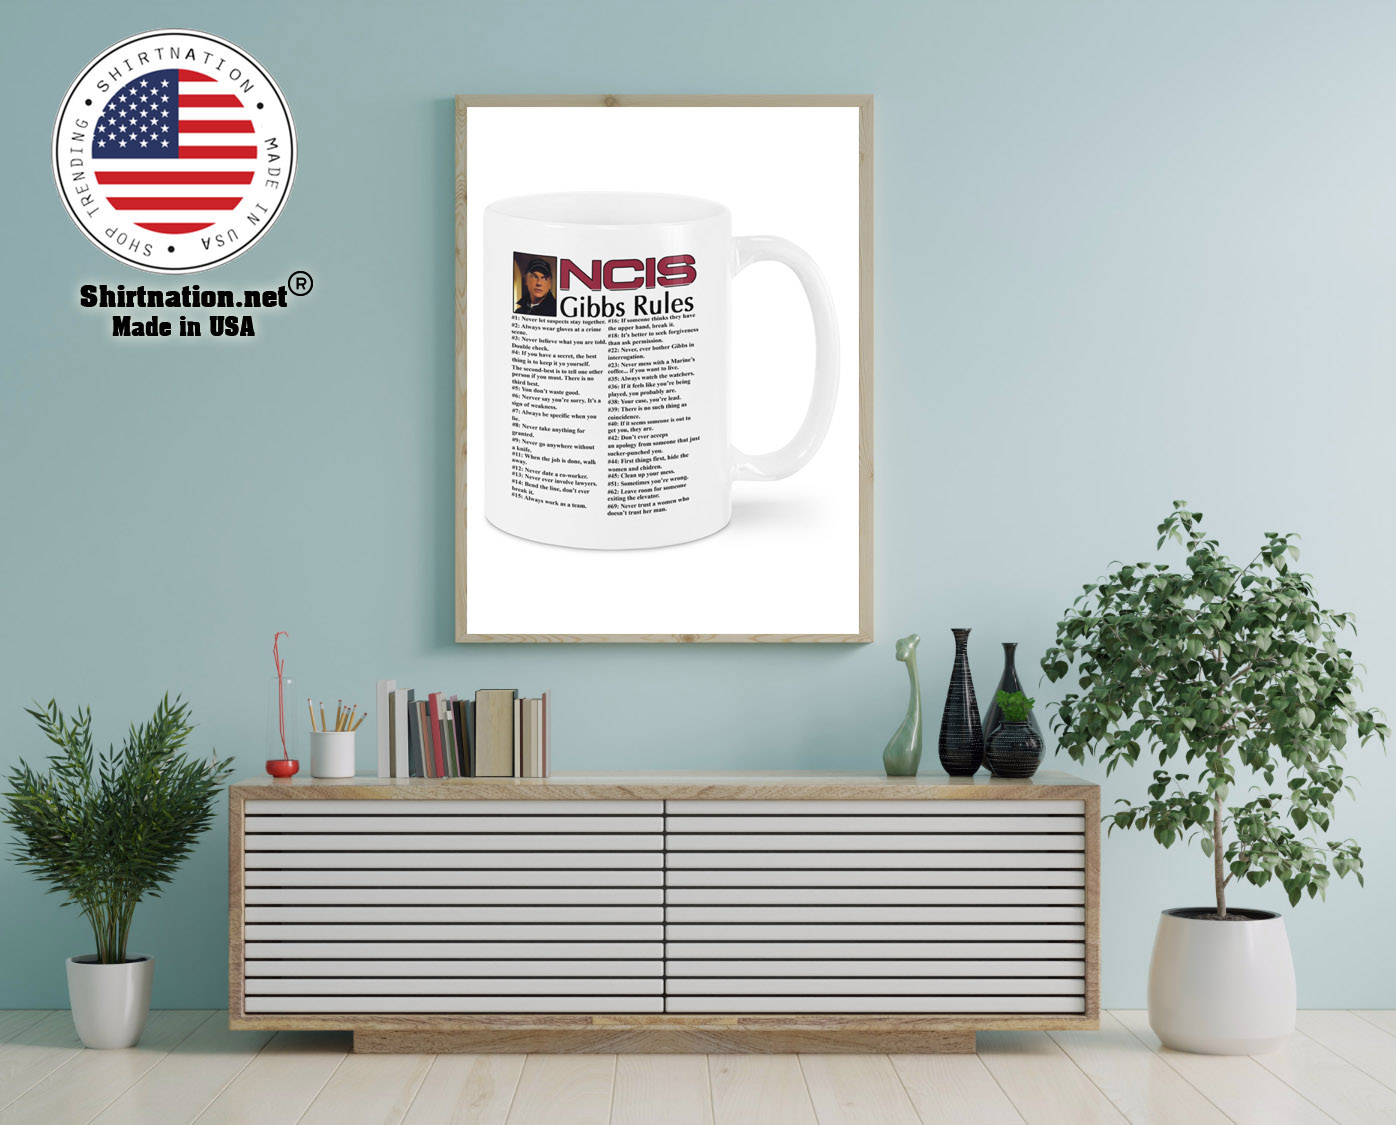 NCIS gibbs rules mug 12